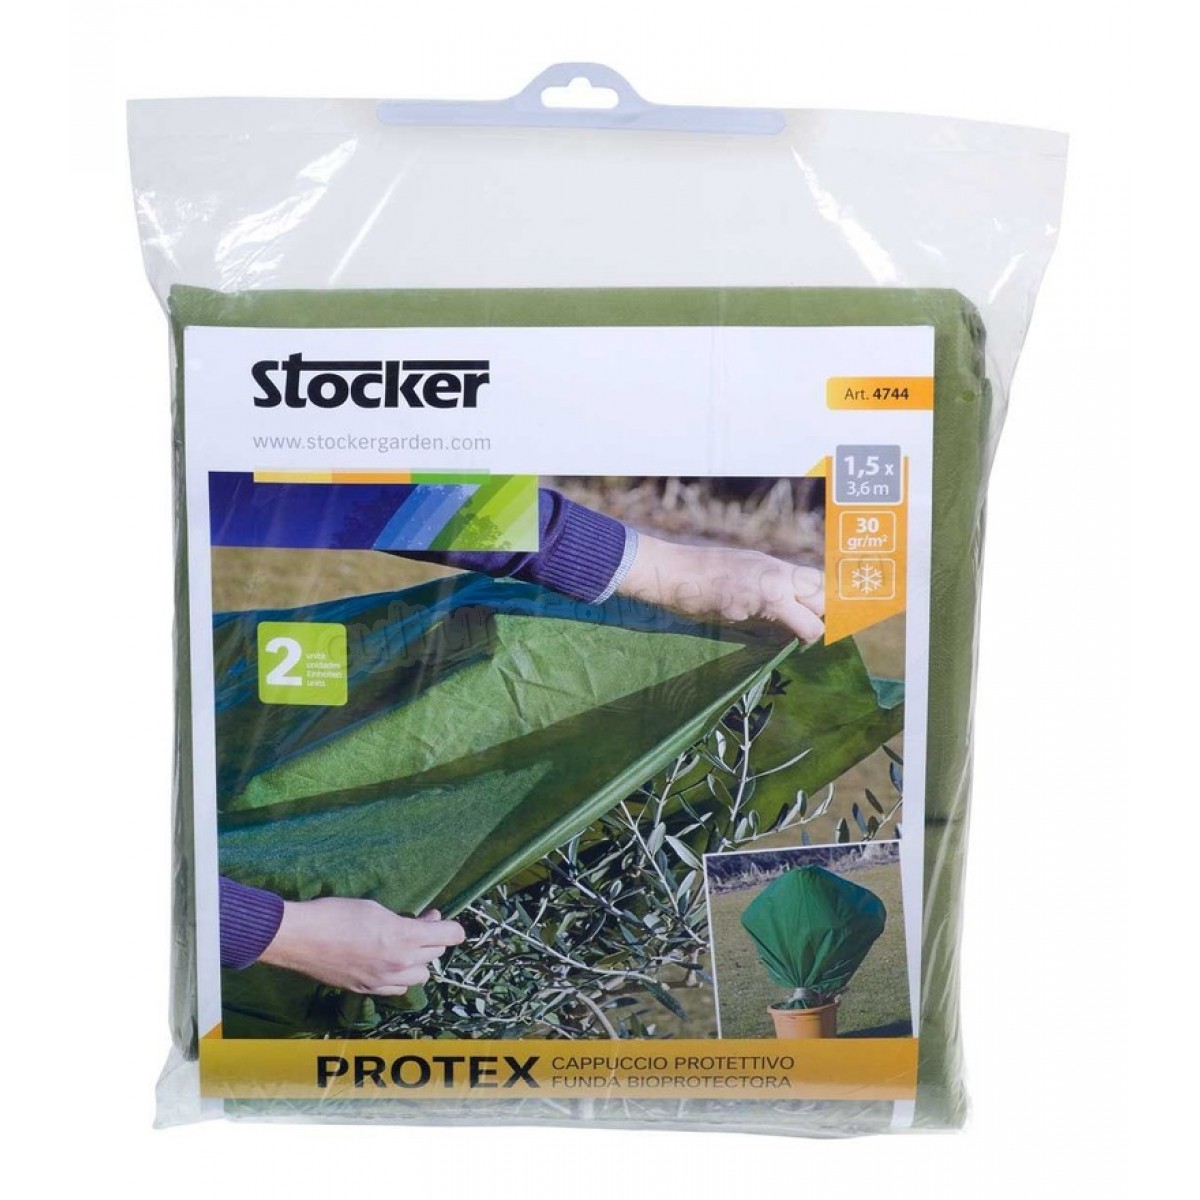 Stocker Protex Cappuccio protettivo 1,5 x 3,6 m 30 gr verde soldes en ligne - Stocker Protex Cappuccio protettivo 1,5 x 3,6 m 30 gr verde soldes en ligne